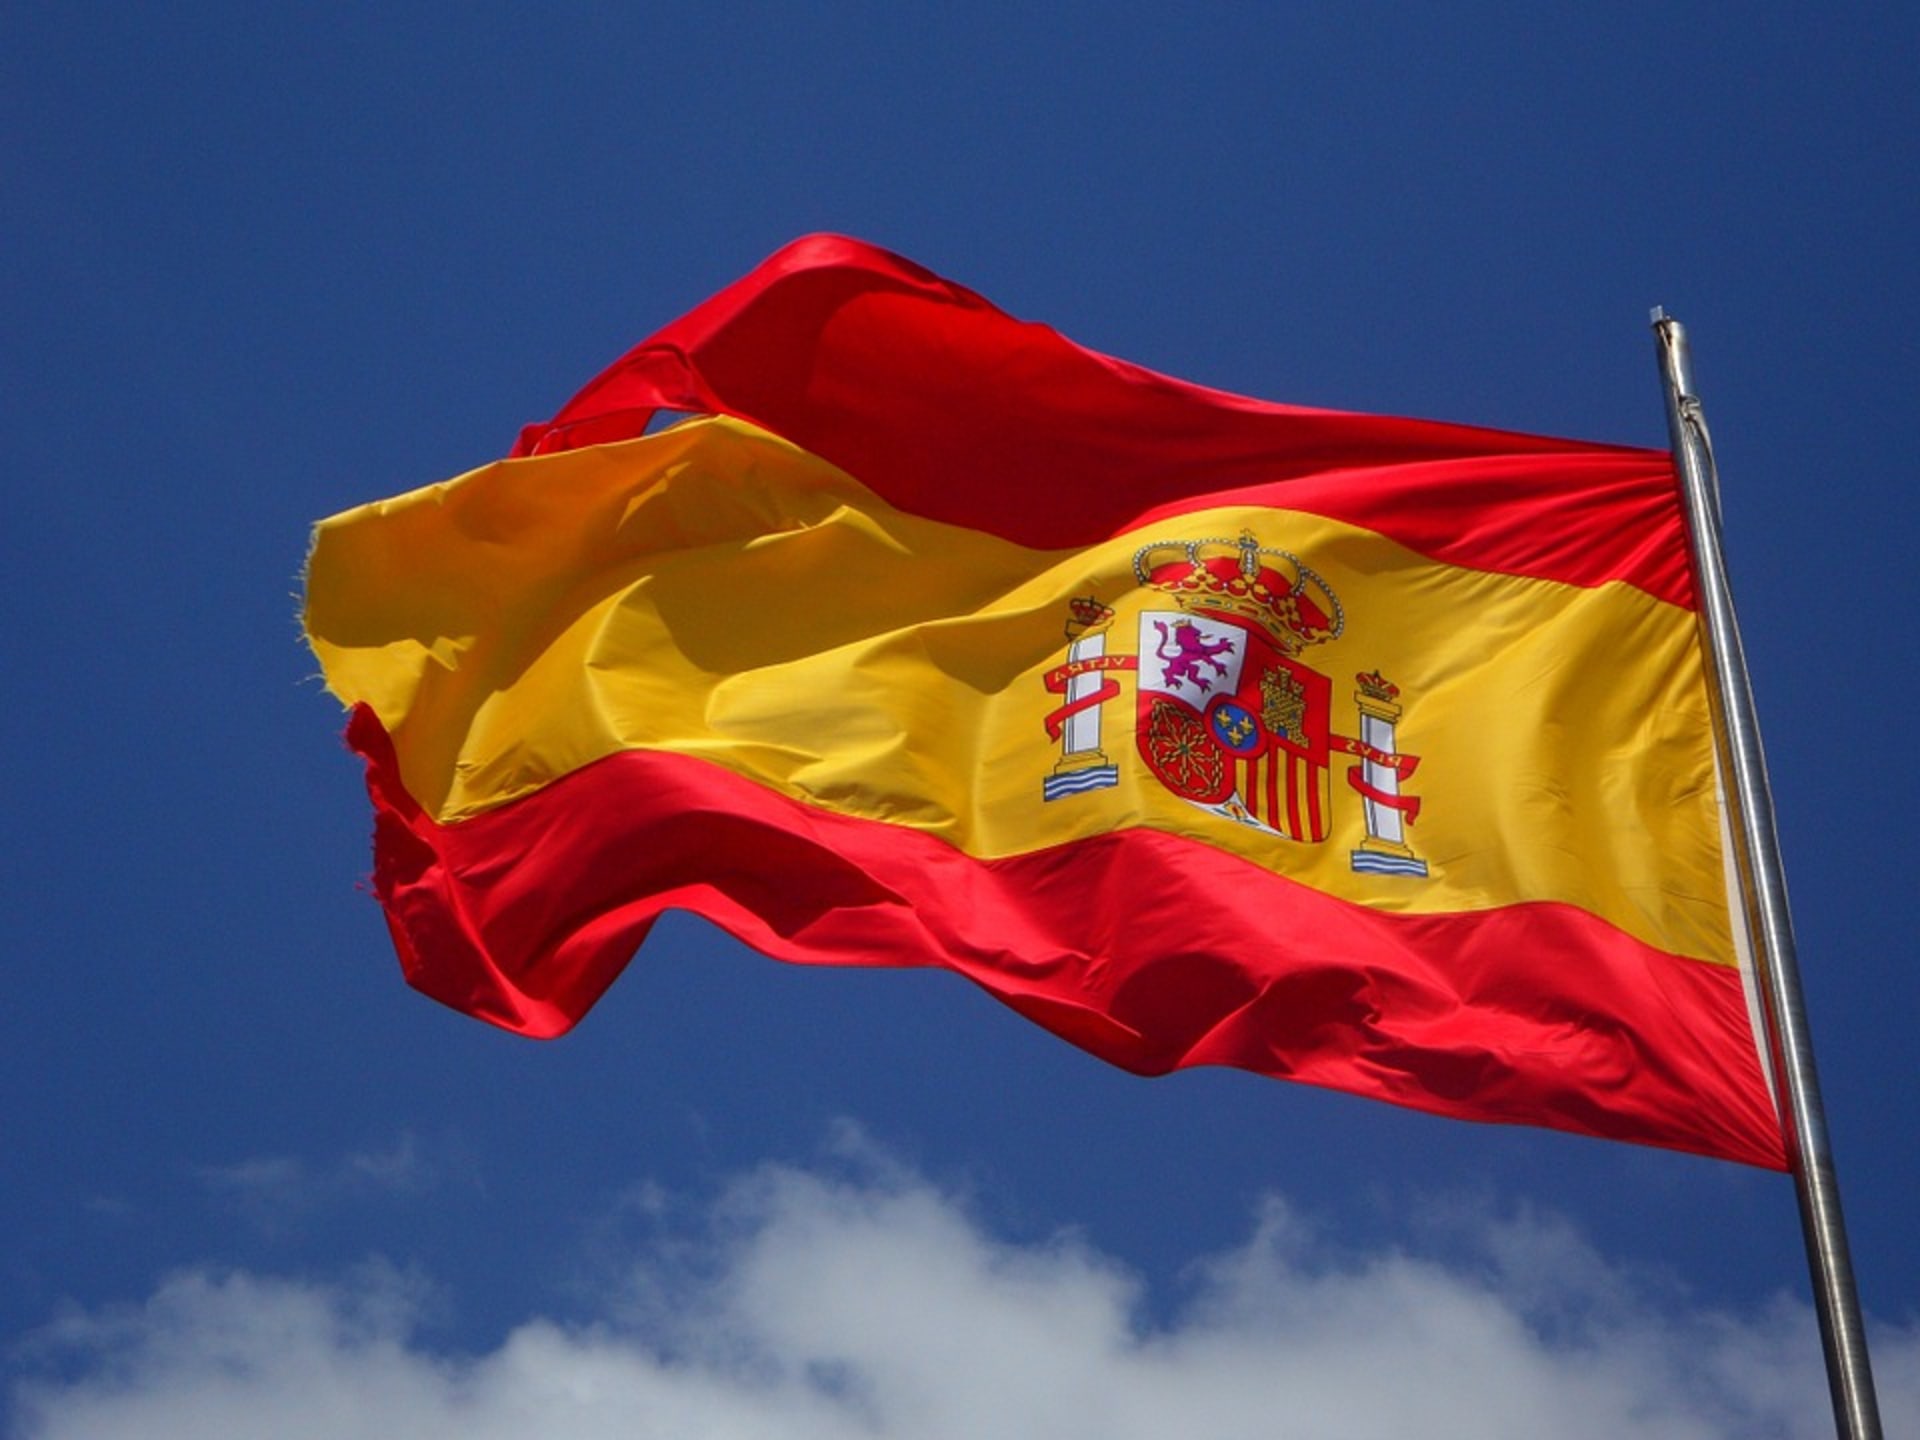 Ilustrační fotografie -Španělská vlajka